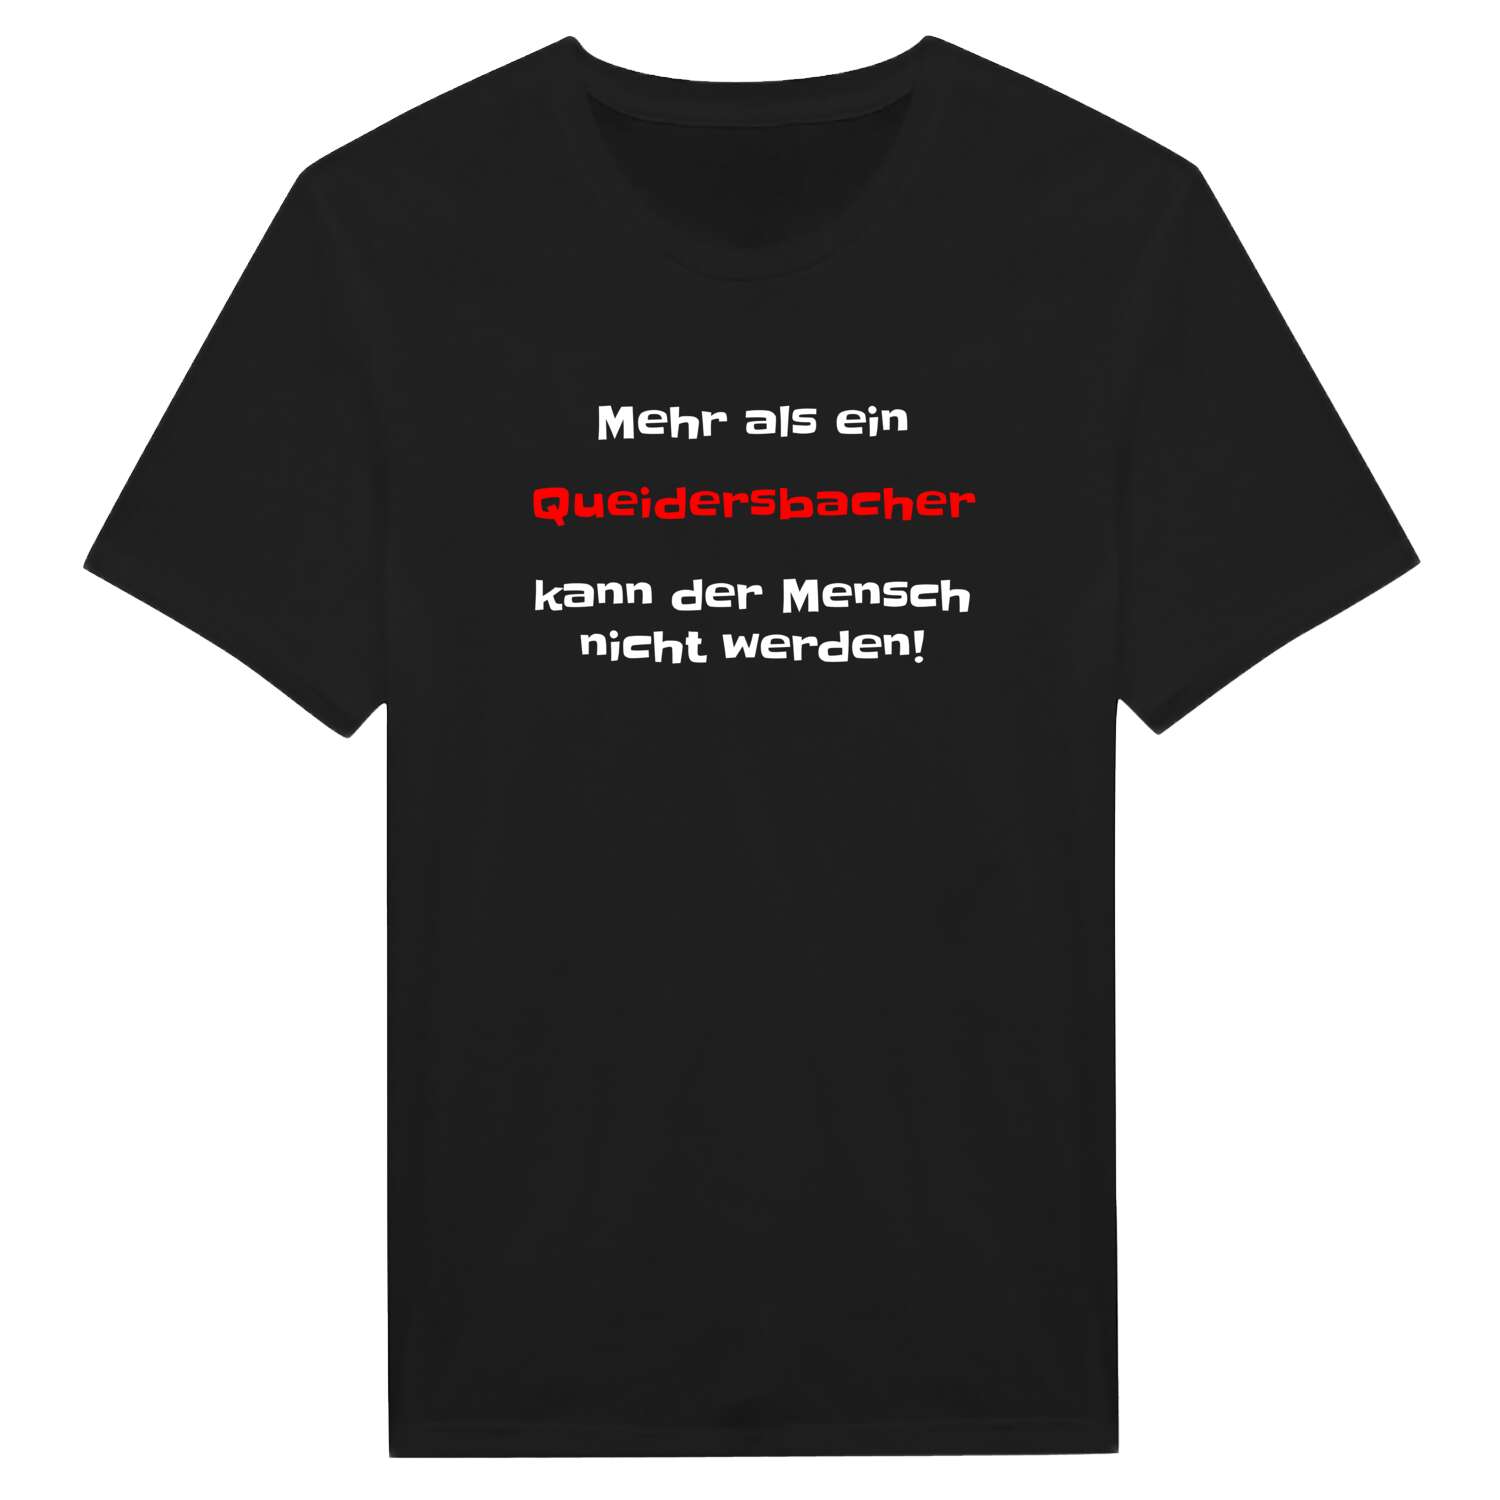 Queidersbach T-Shirt »Mehr als ein«